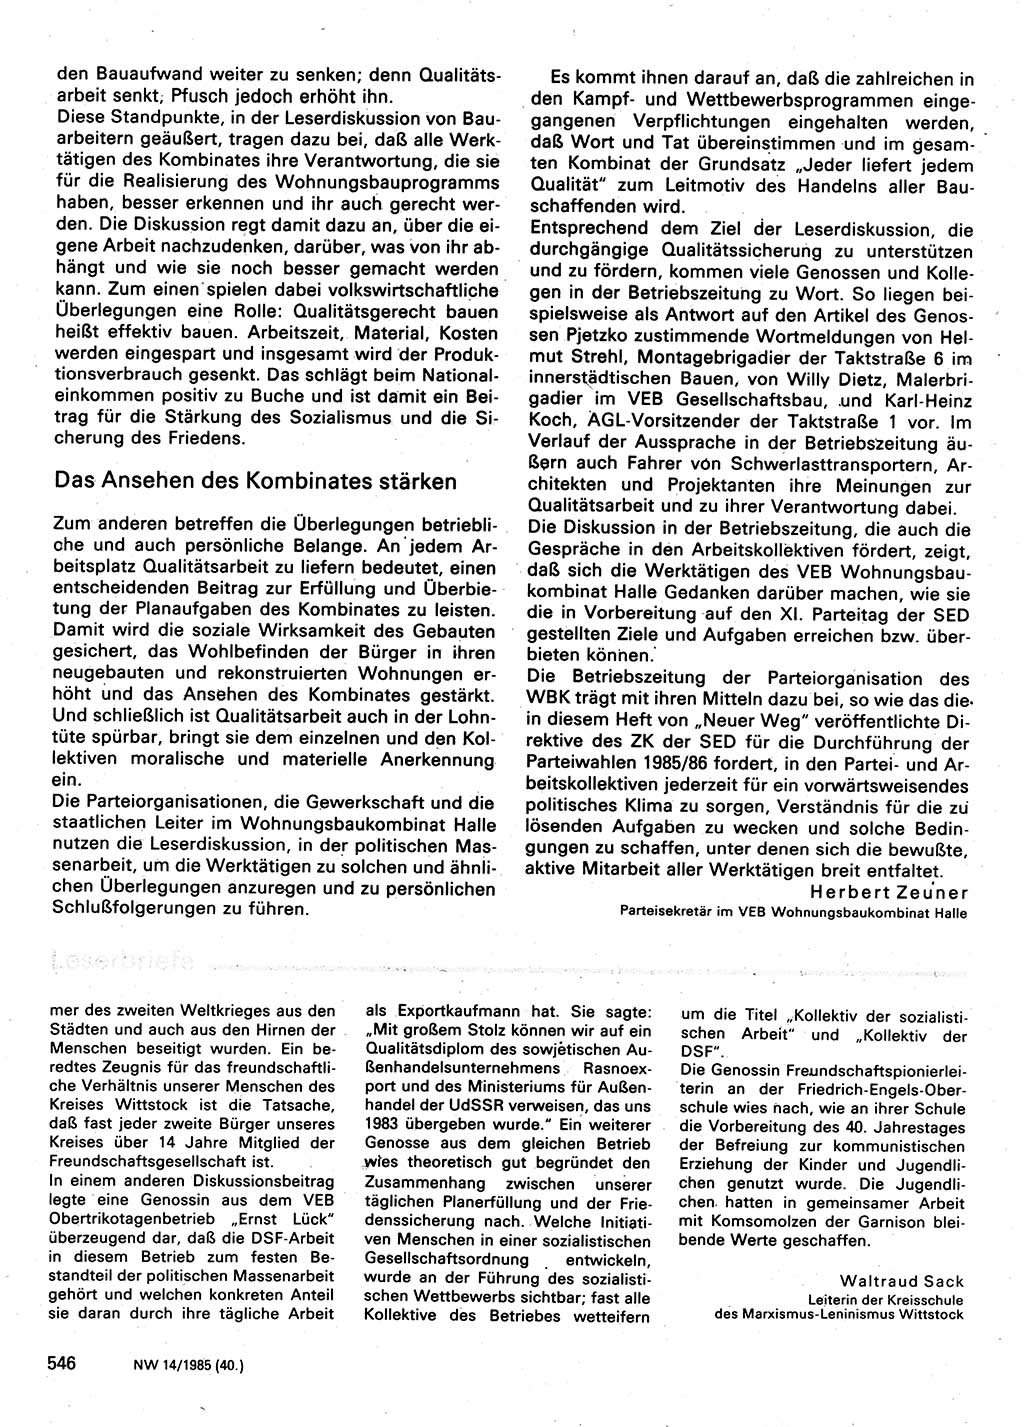 Neuer Weg (NW), Organ des Zentralkomitees (ZK) der SED (Sozialistische Einheitspartei Deutschlands) für Fragen des Parteilebens, 40. Jahrgang [Deutsche Demokratische Republik (DDR)] 1985, Seite 546 (NW ZK SED DDR 1985, S. 546)